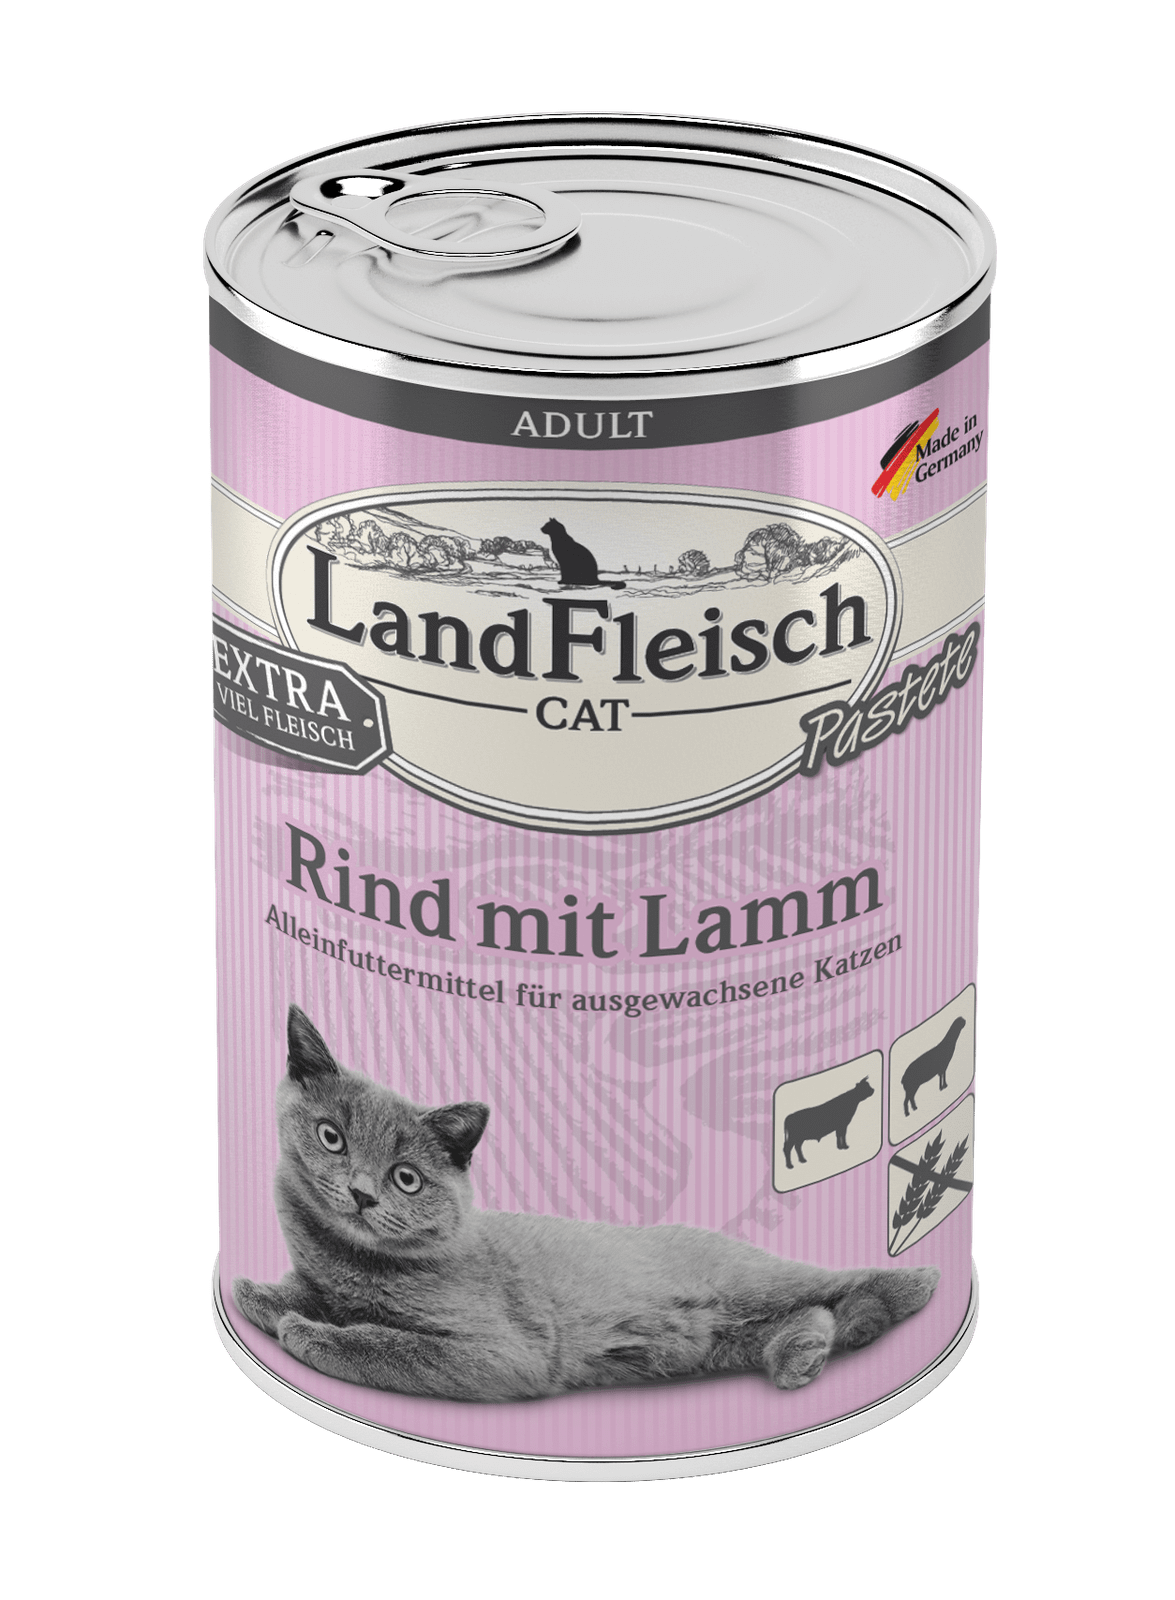 Artikel mit dem Namen LandFleisch Cat Adult Pastete Rind mit Lamm im Shop von zoo.de , dem Onlineshop für nachhaltiges Hundefutter und Katzenfutter.